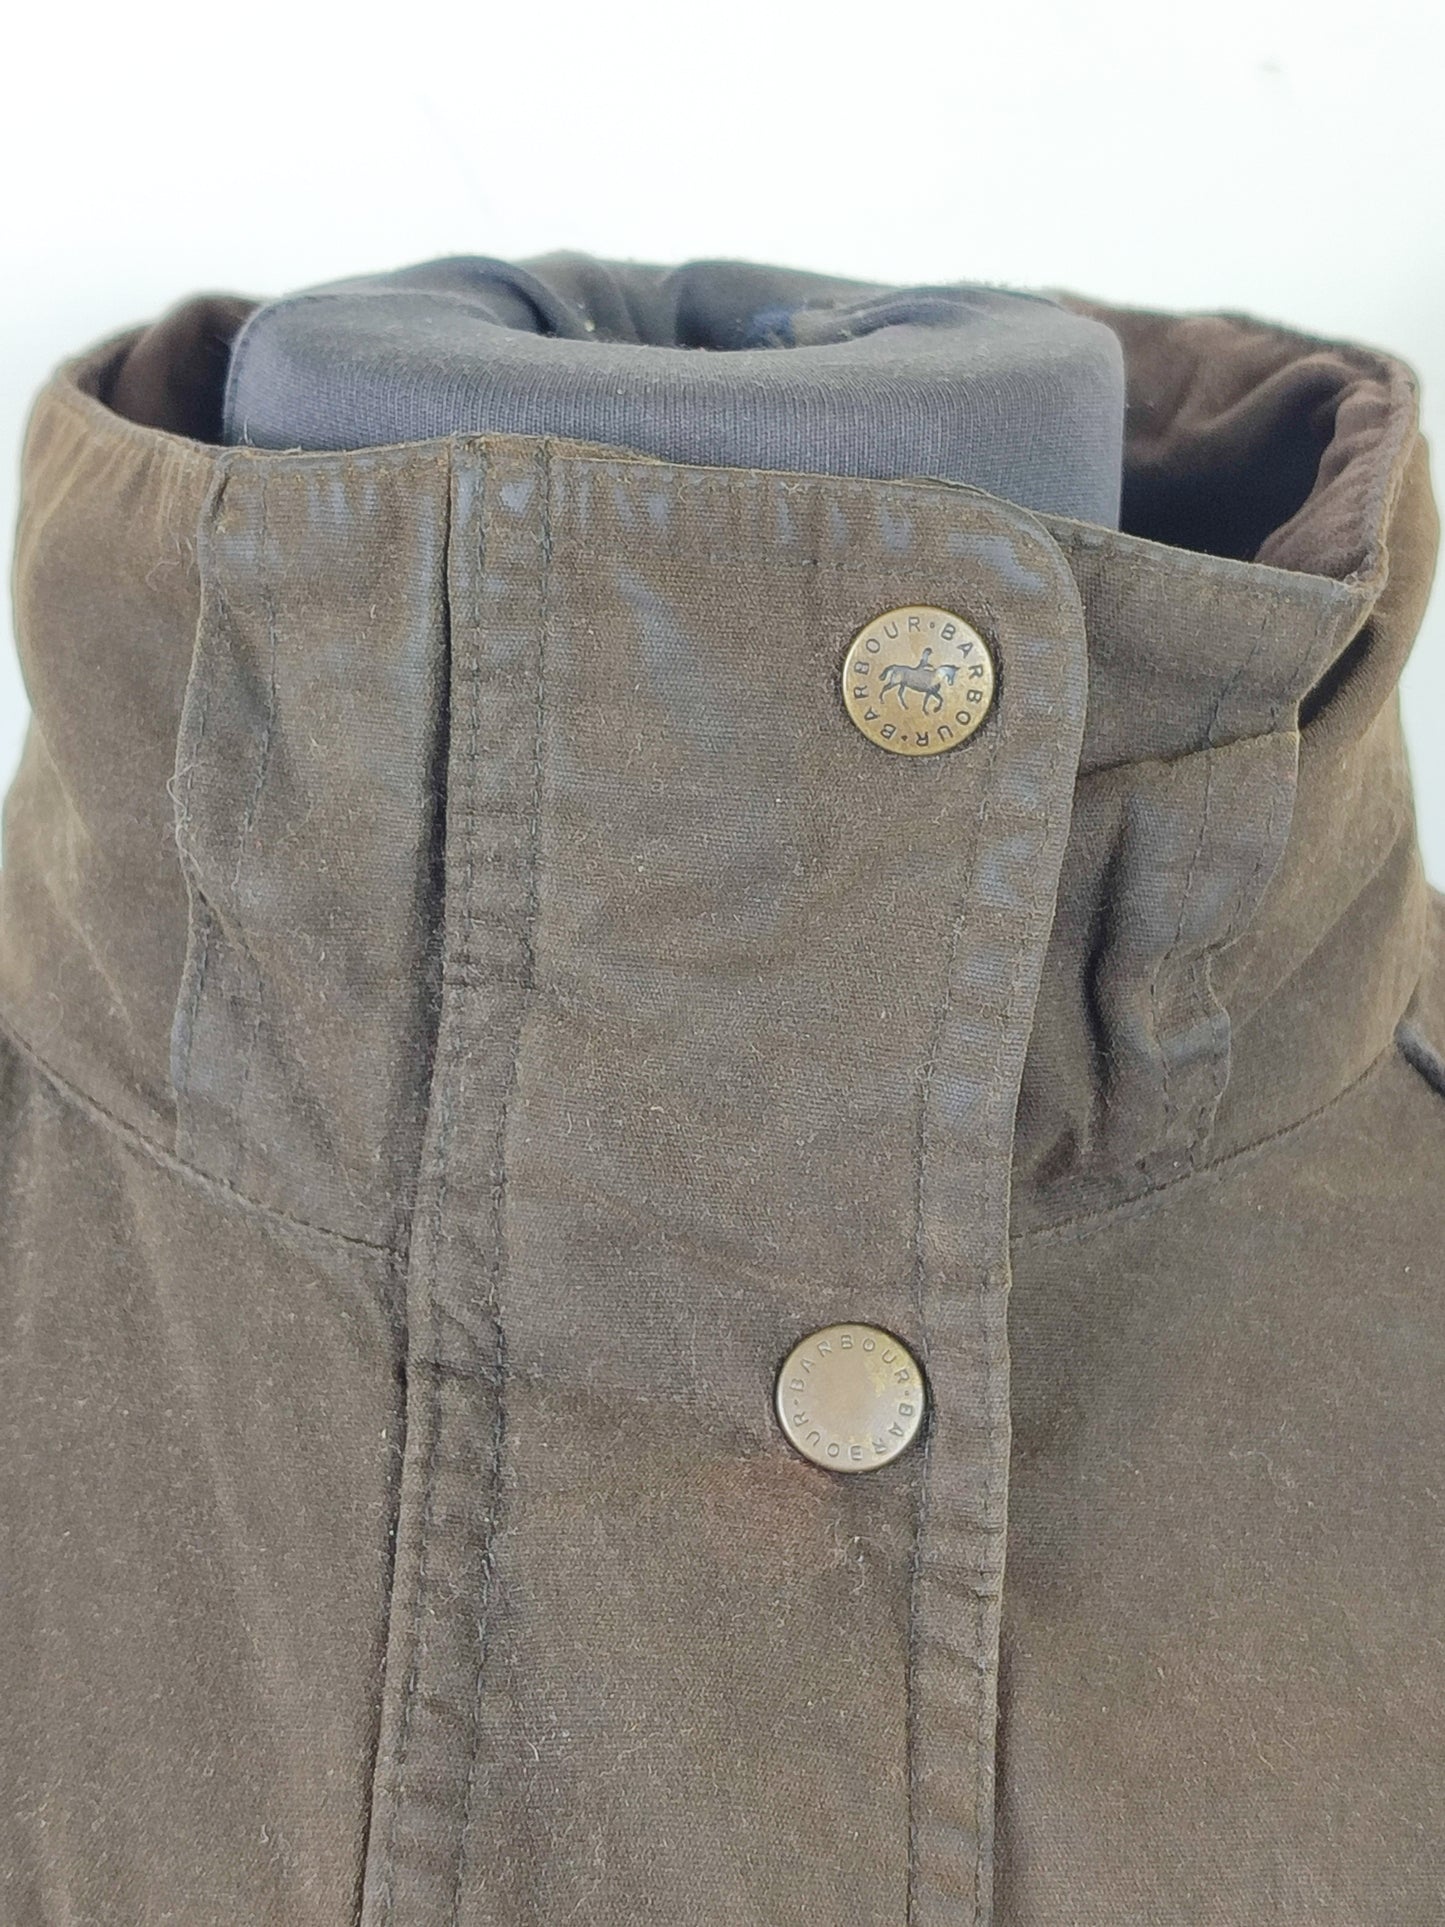 Barbour Giacca da donna oliva Medium Tg.44 Equine Lady Olive cotton jacket size uk14